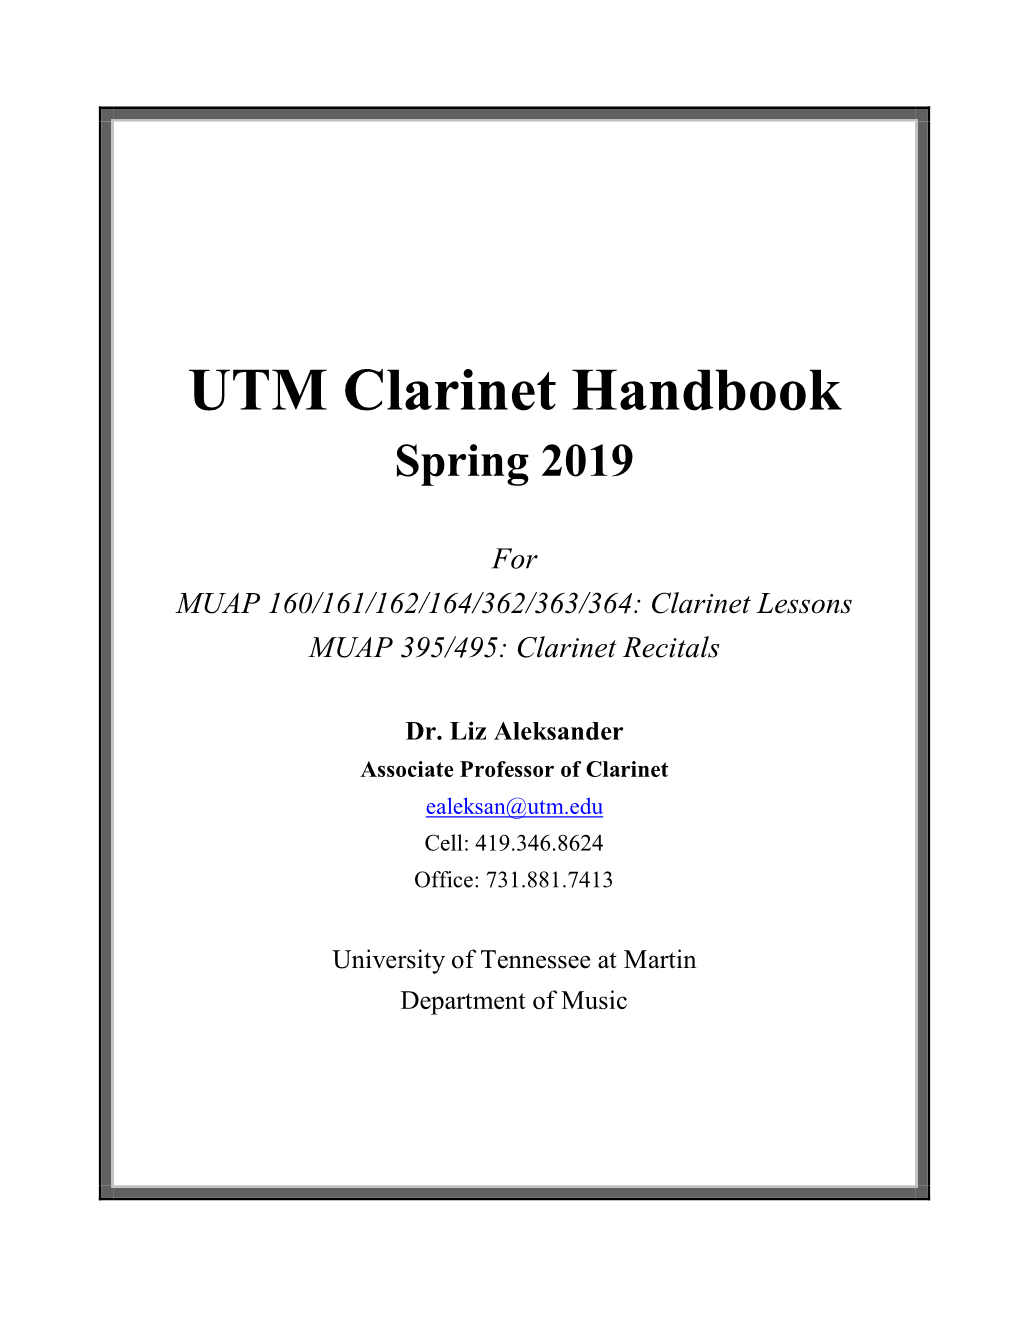 UTM Clarinet Handbook Spring 2019